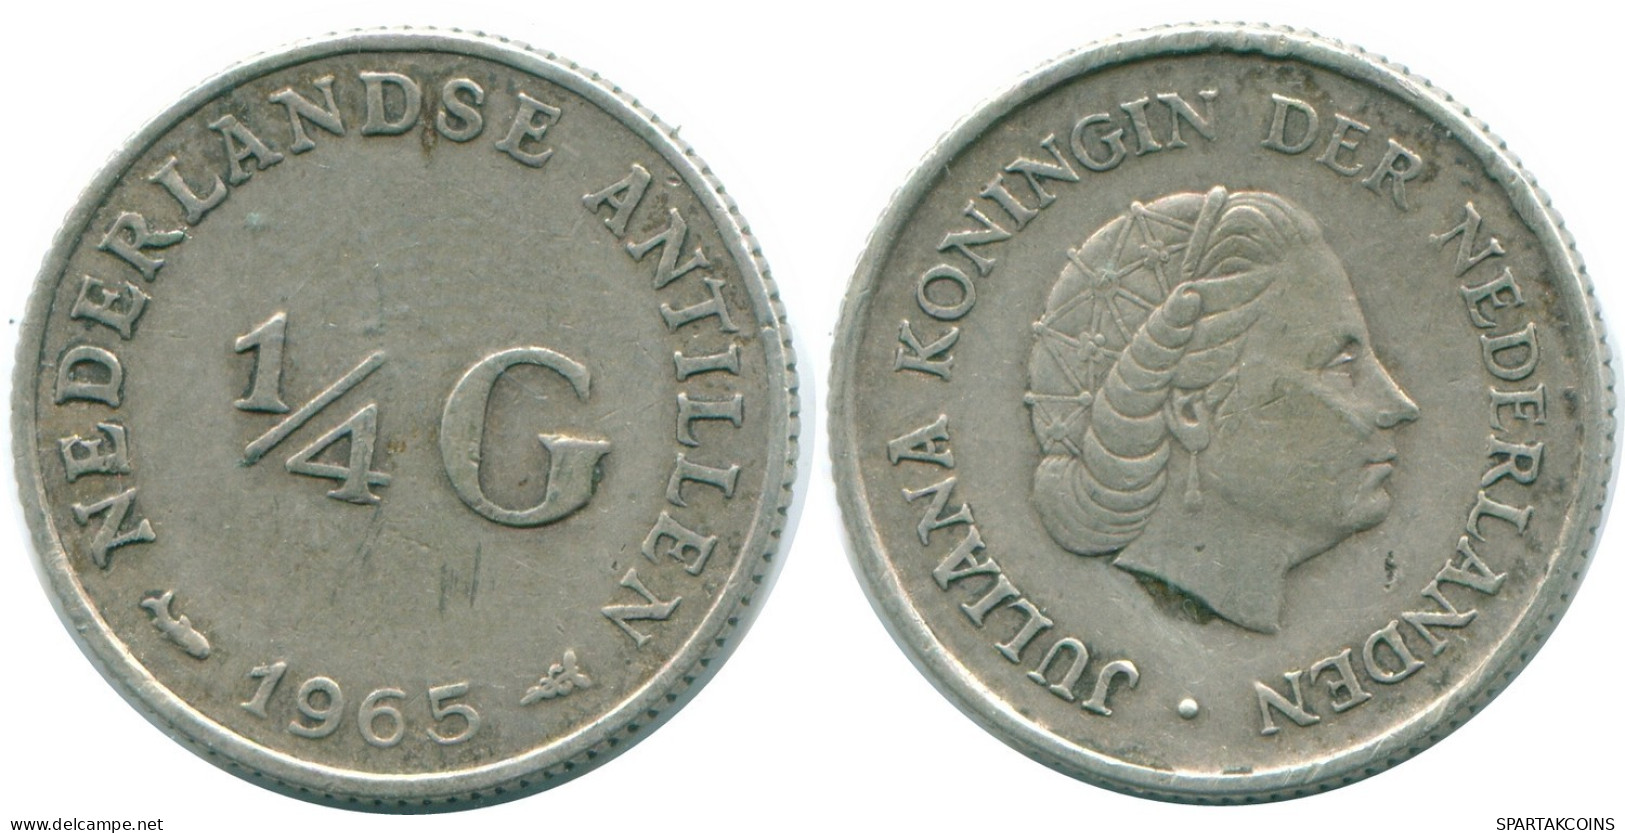 1/4 GULDEN 1965 NIEDERLÄNDISCHE ANTILLEN SILBER Koloniale Münze #NL11352.4.D.A - Antilles Néerlandaises